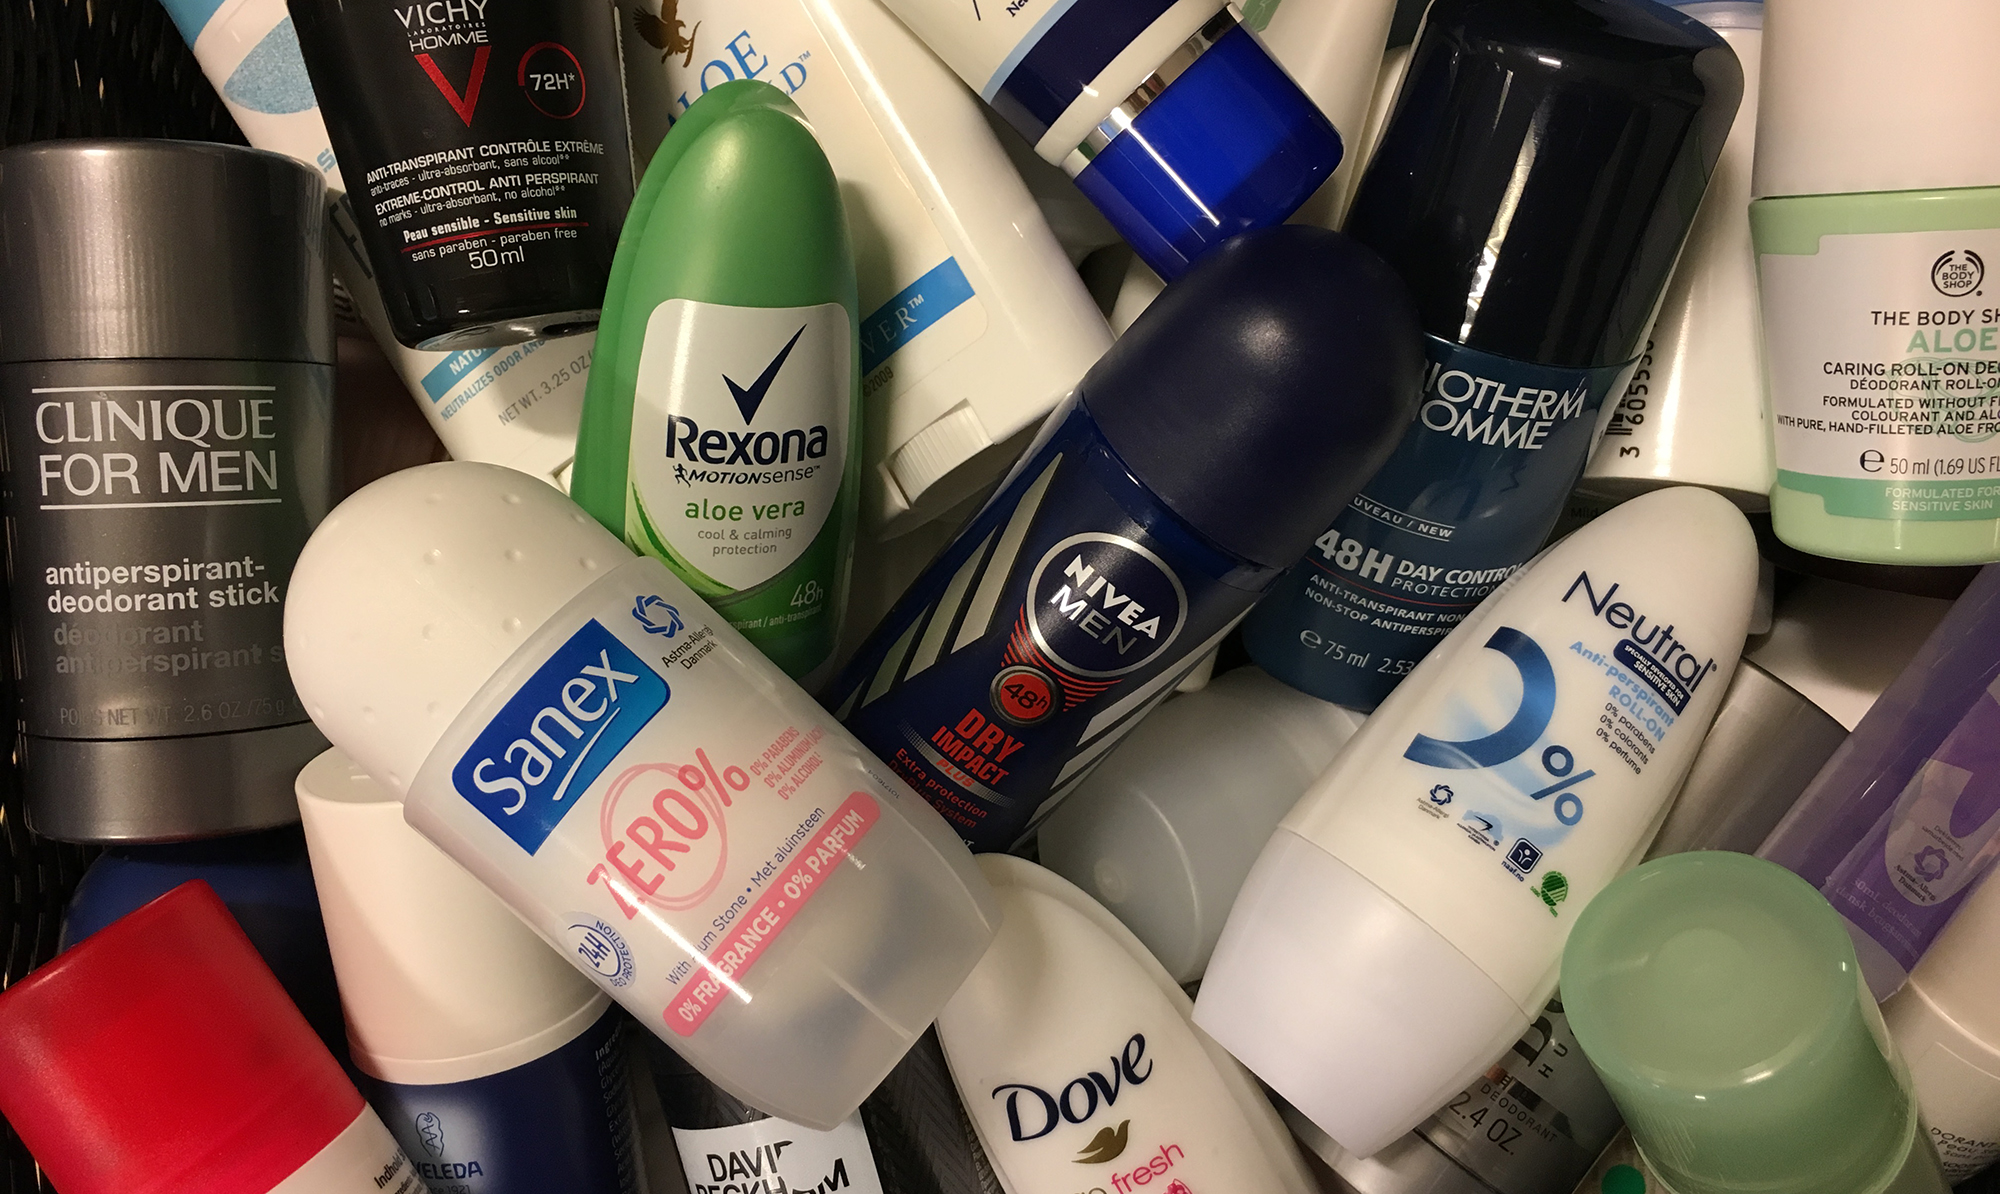 utilsigtet hændelse Kanon Torrent Stor test af kemi i deodoranter: Flere produkter dumper - ALT.dk